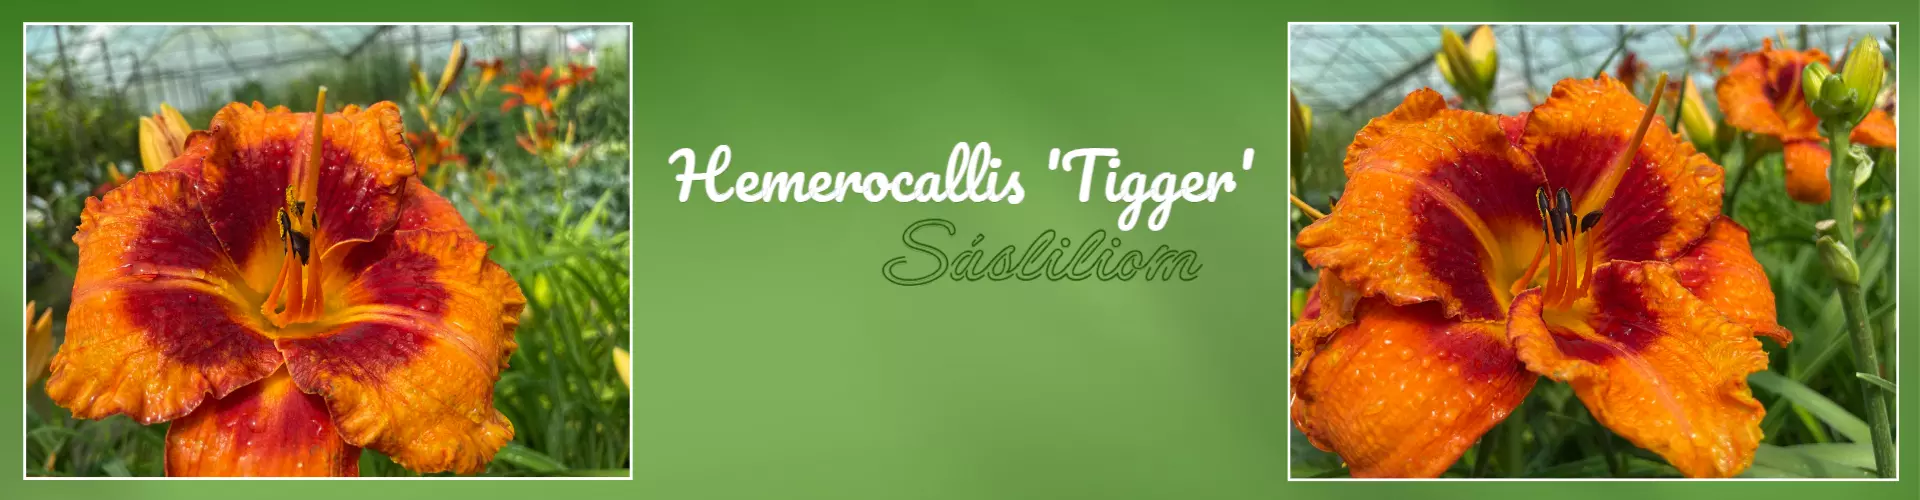 Hemerocallis 'Tigger' – Sásliliom